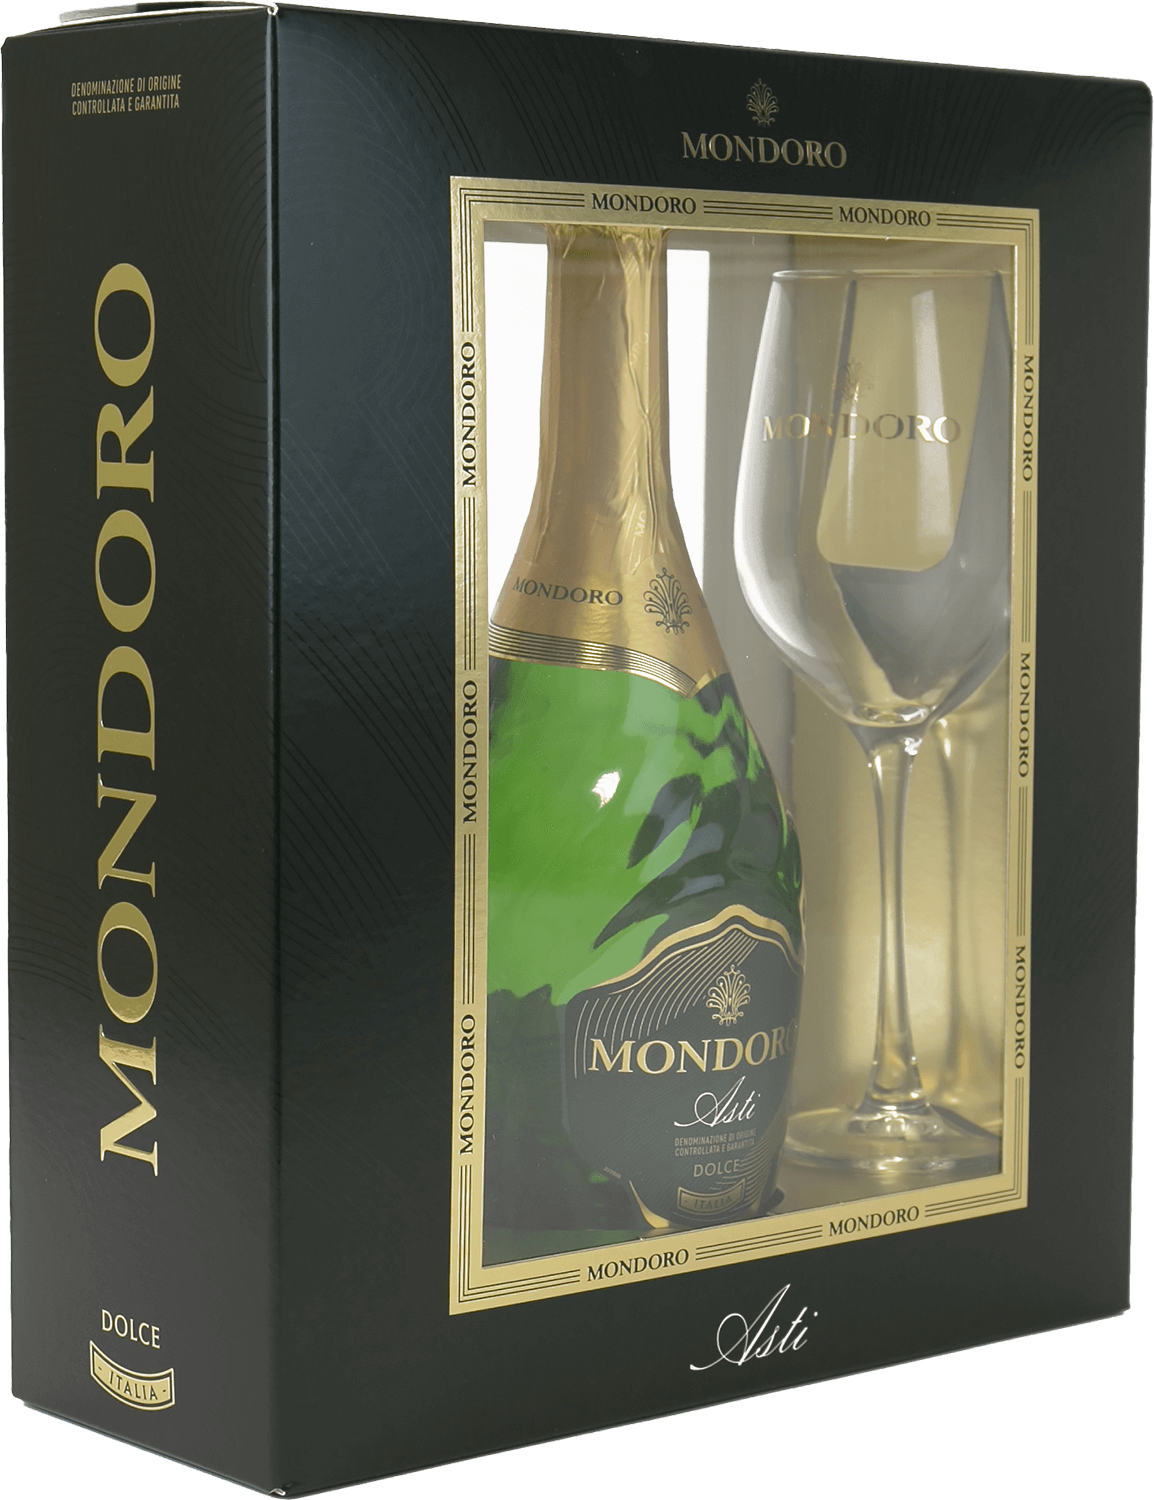 Mondoro Asti DOCG Campari (gift box with 2 glasses) drappier andquot grande sendreeandquot gift box with 2 glasses